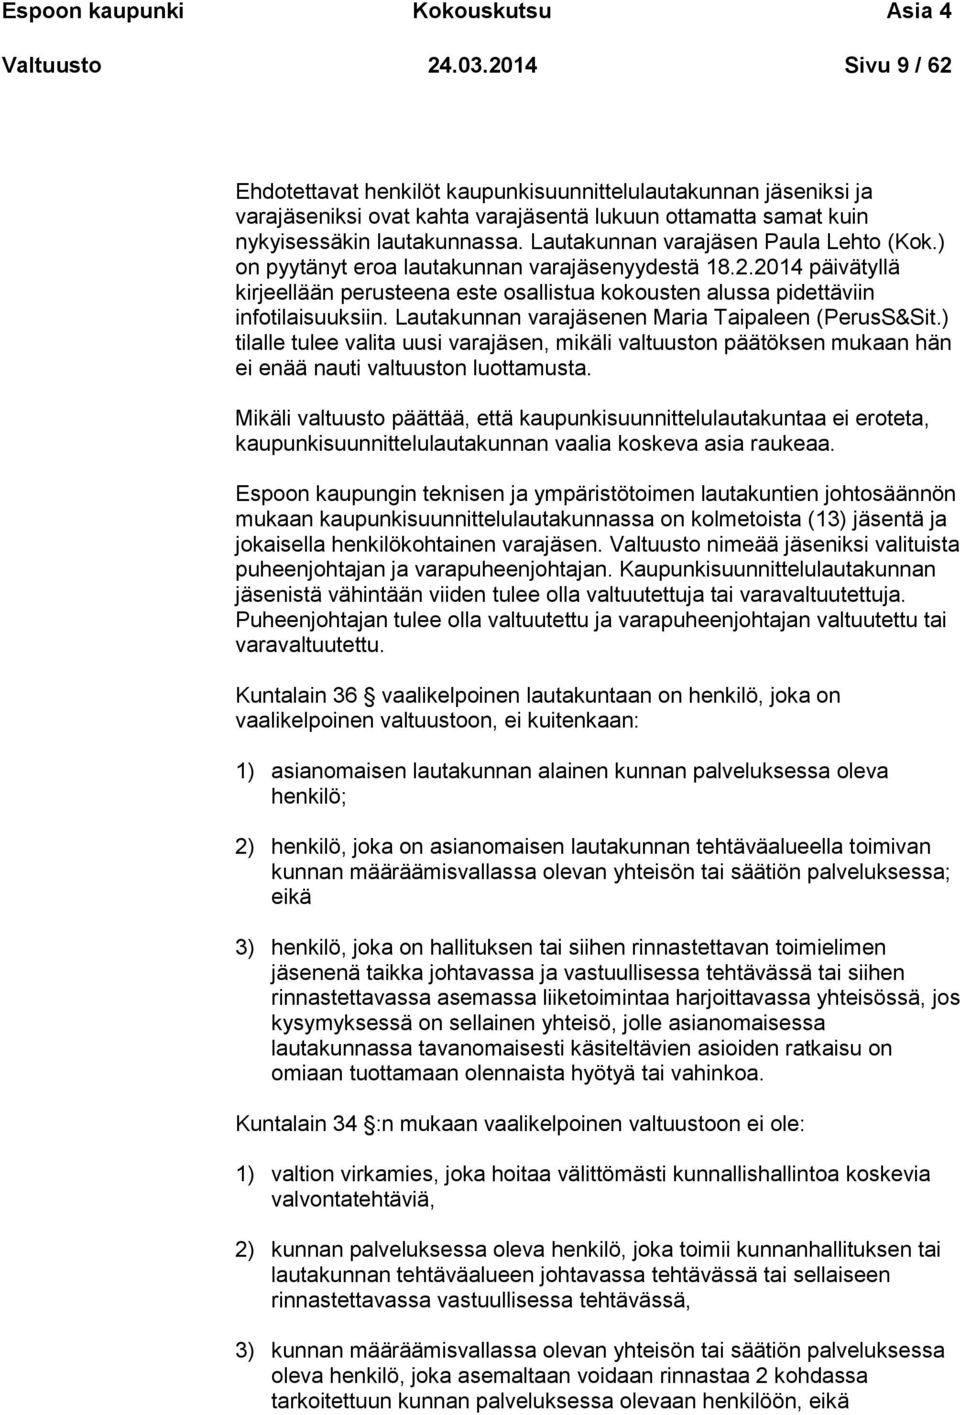 Lautakunnan varajäsen Paula Lehto (Kok.) on pyytänyt eroa lautakunnan varajäsenyydestä 18.2.2014 päivätyllä kirjeellään perusteena este osallistua kokousten alussa pidettäviin infotilaisuuksiin.